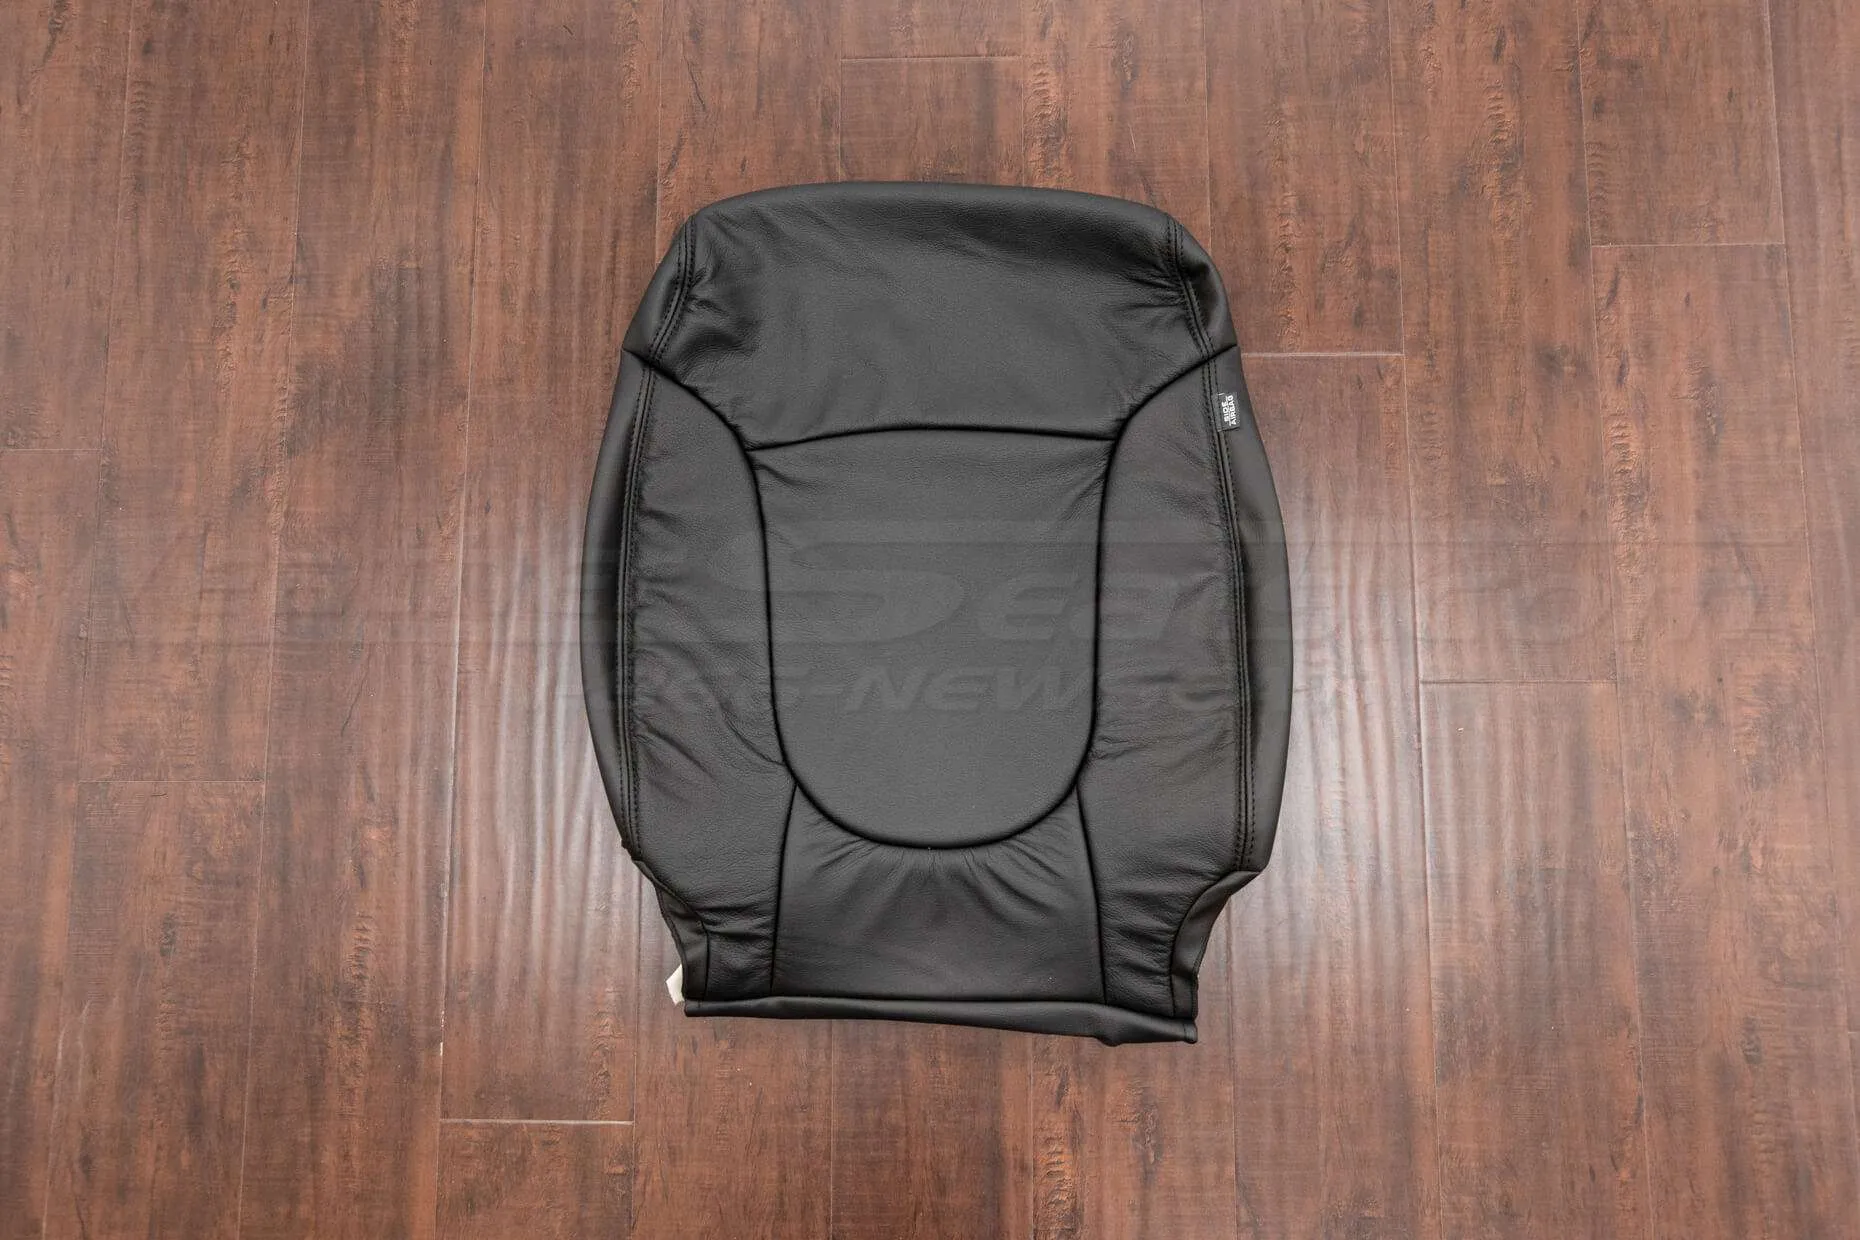 2010-2013 Kia Forte Upholstery Kit- Black - Front backrest